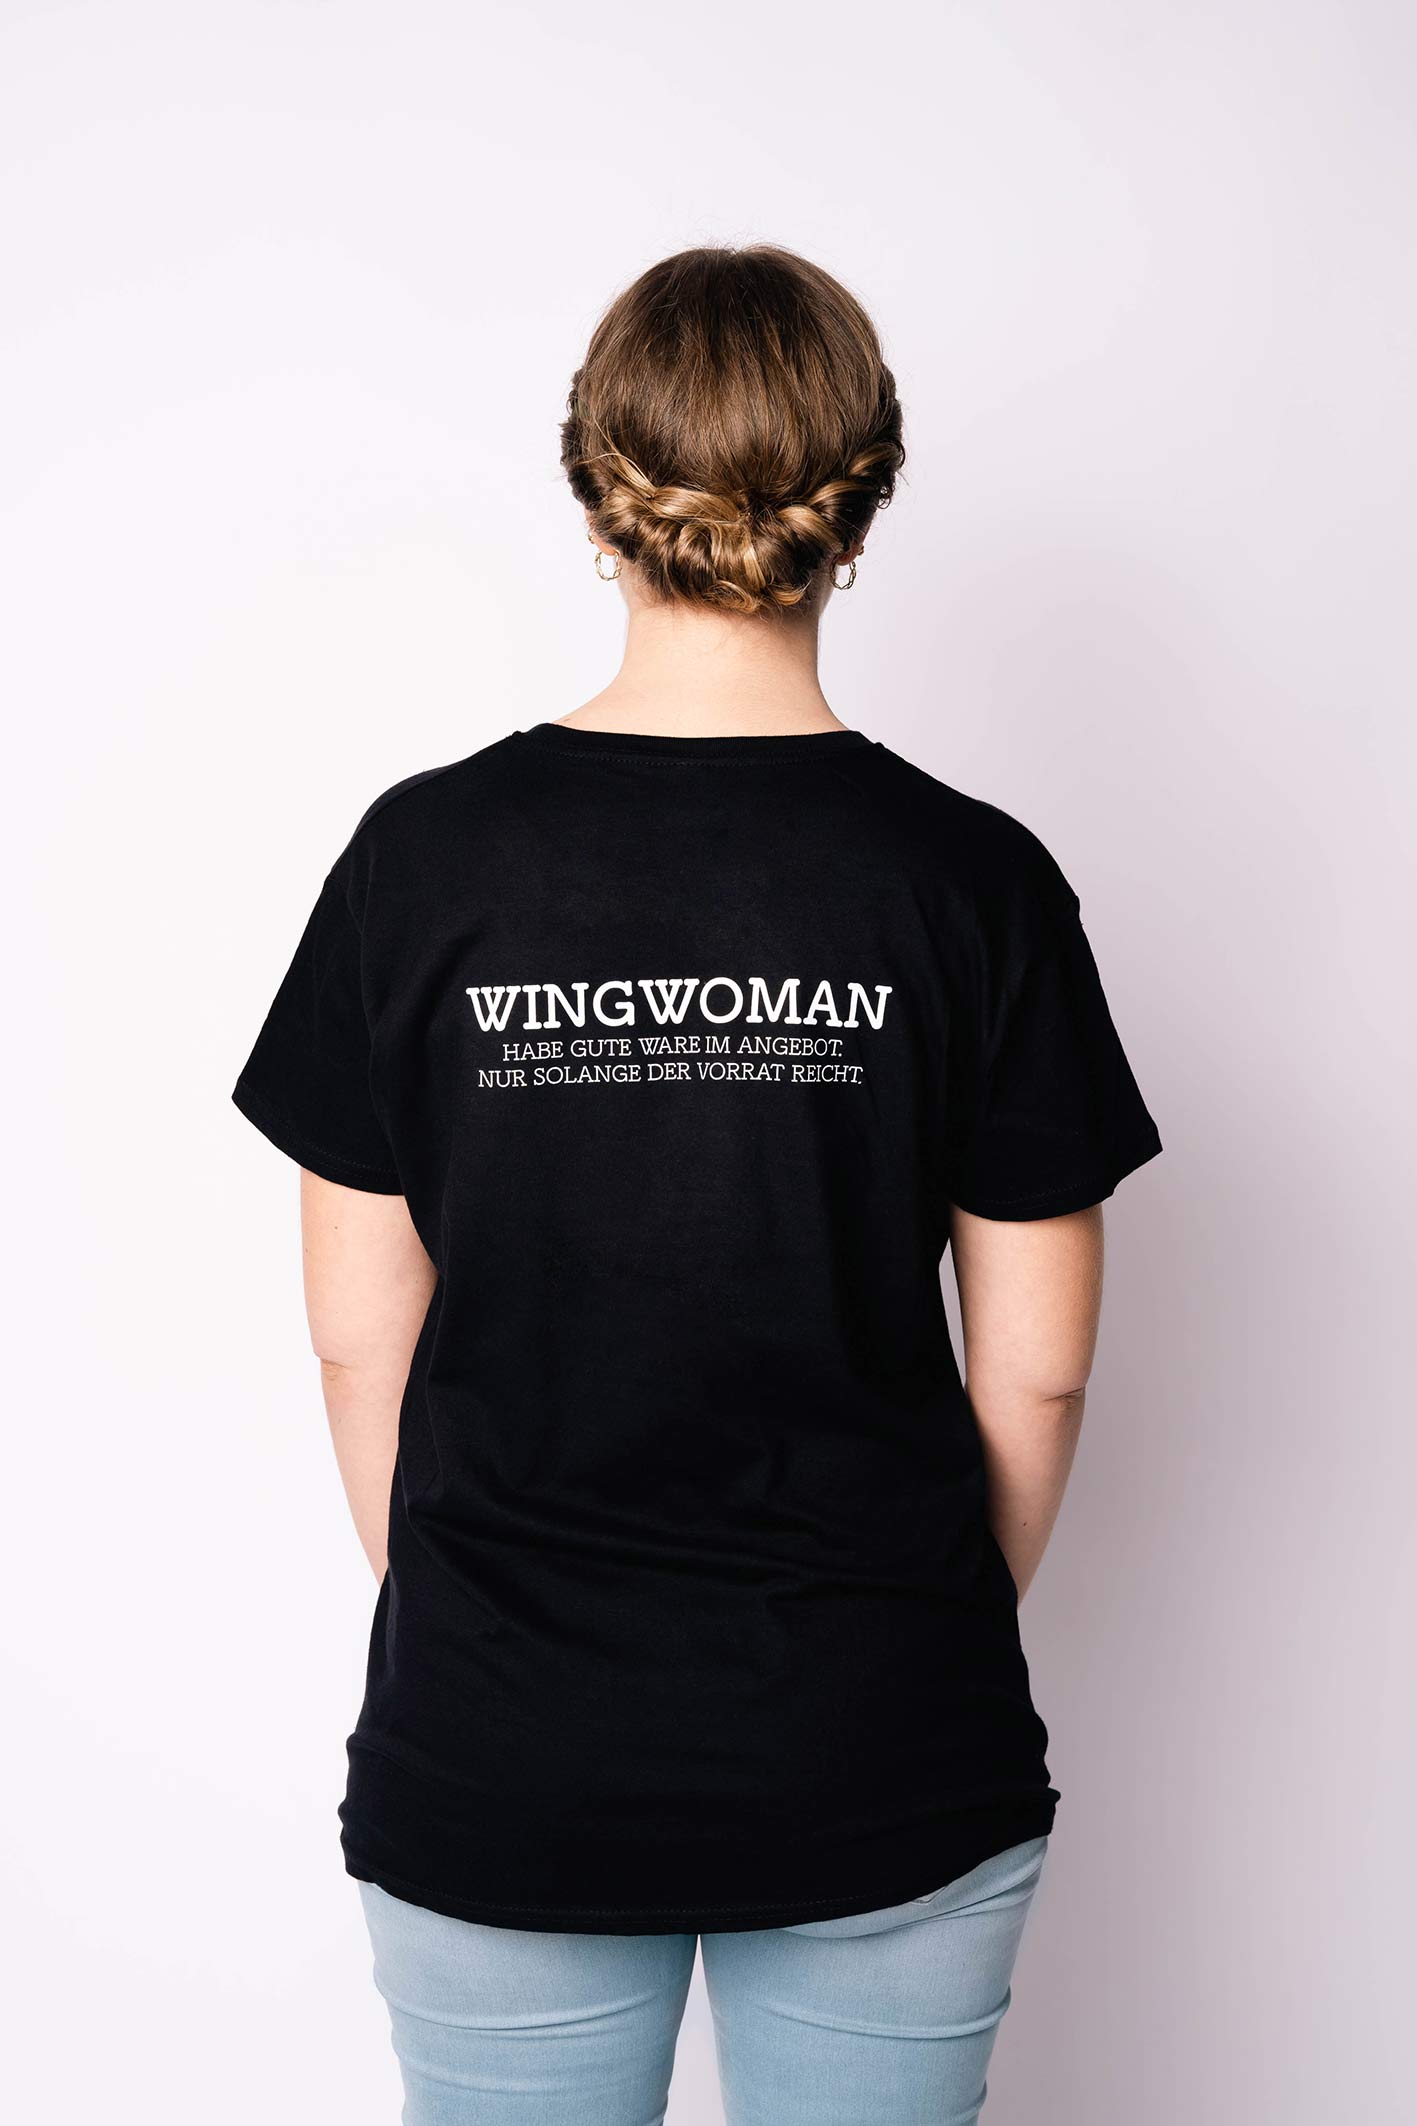 I'm a wingwoman